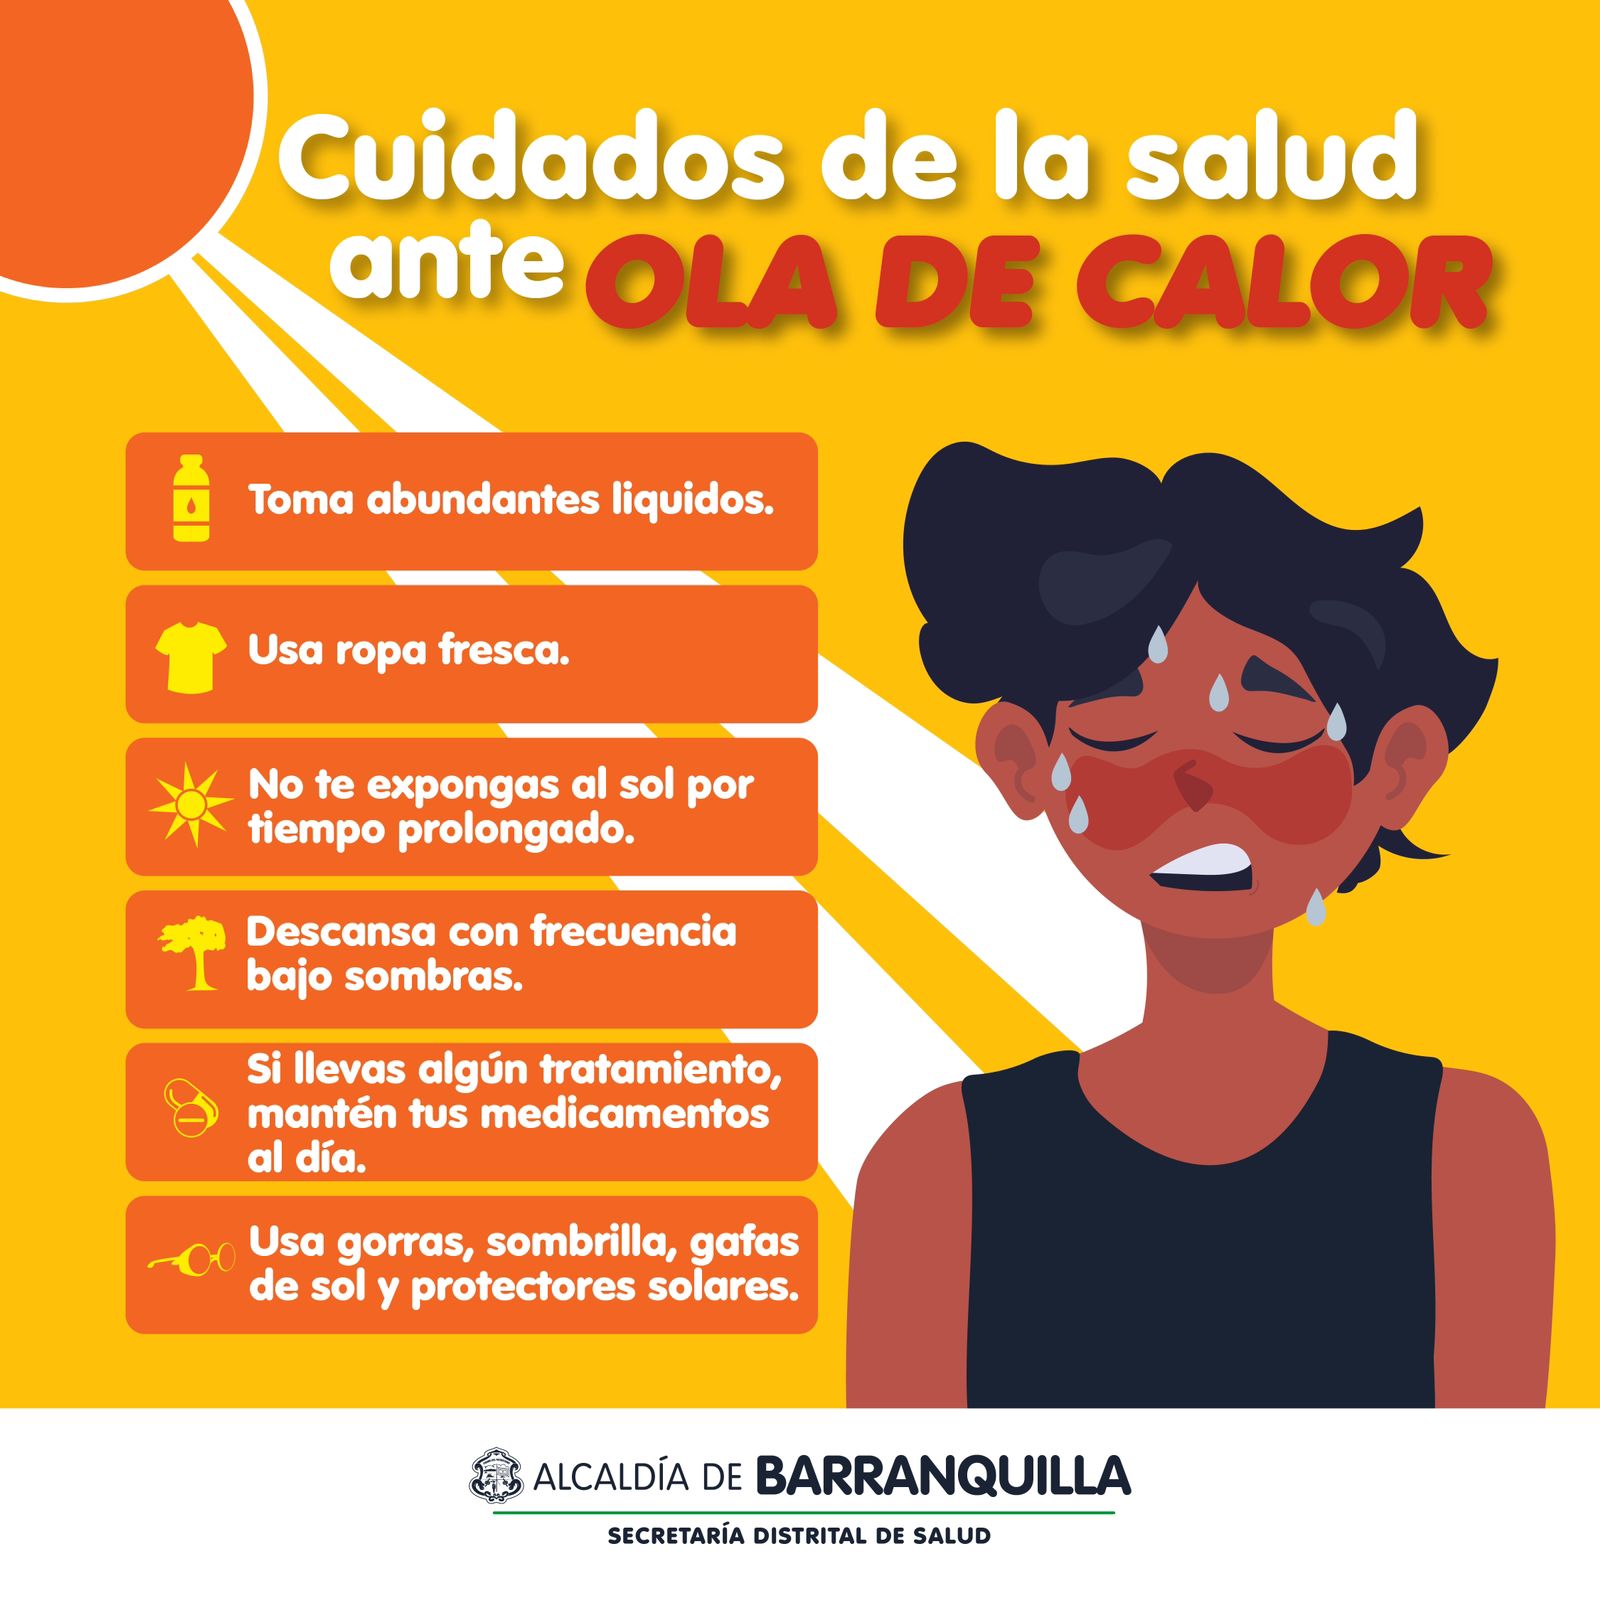 La Alcaldía de Barranquilla entregó una serie de recomendaciones para prevenir problemas de salud por la ola de calor